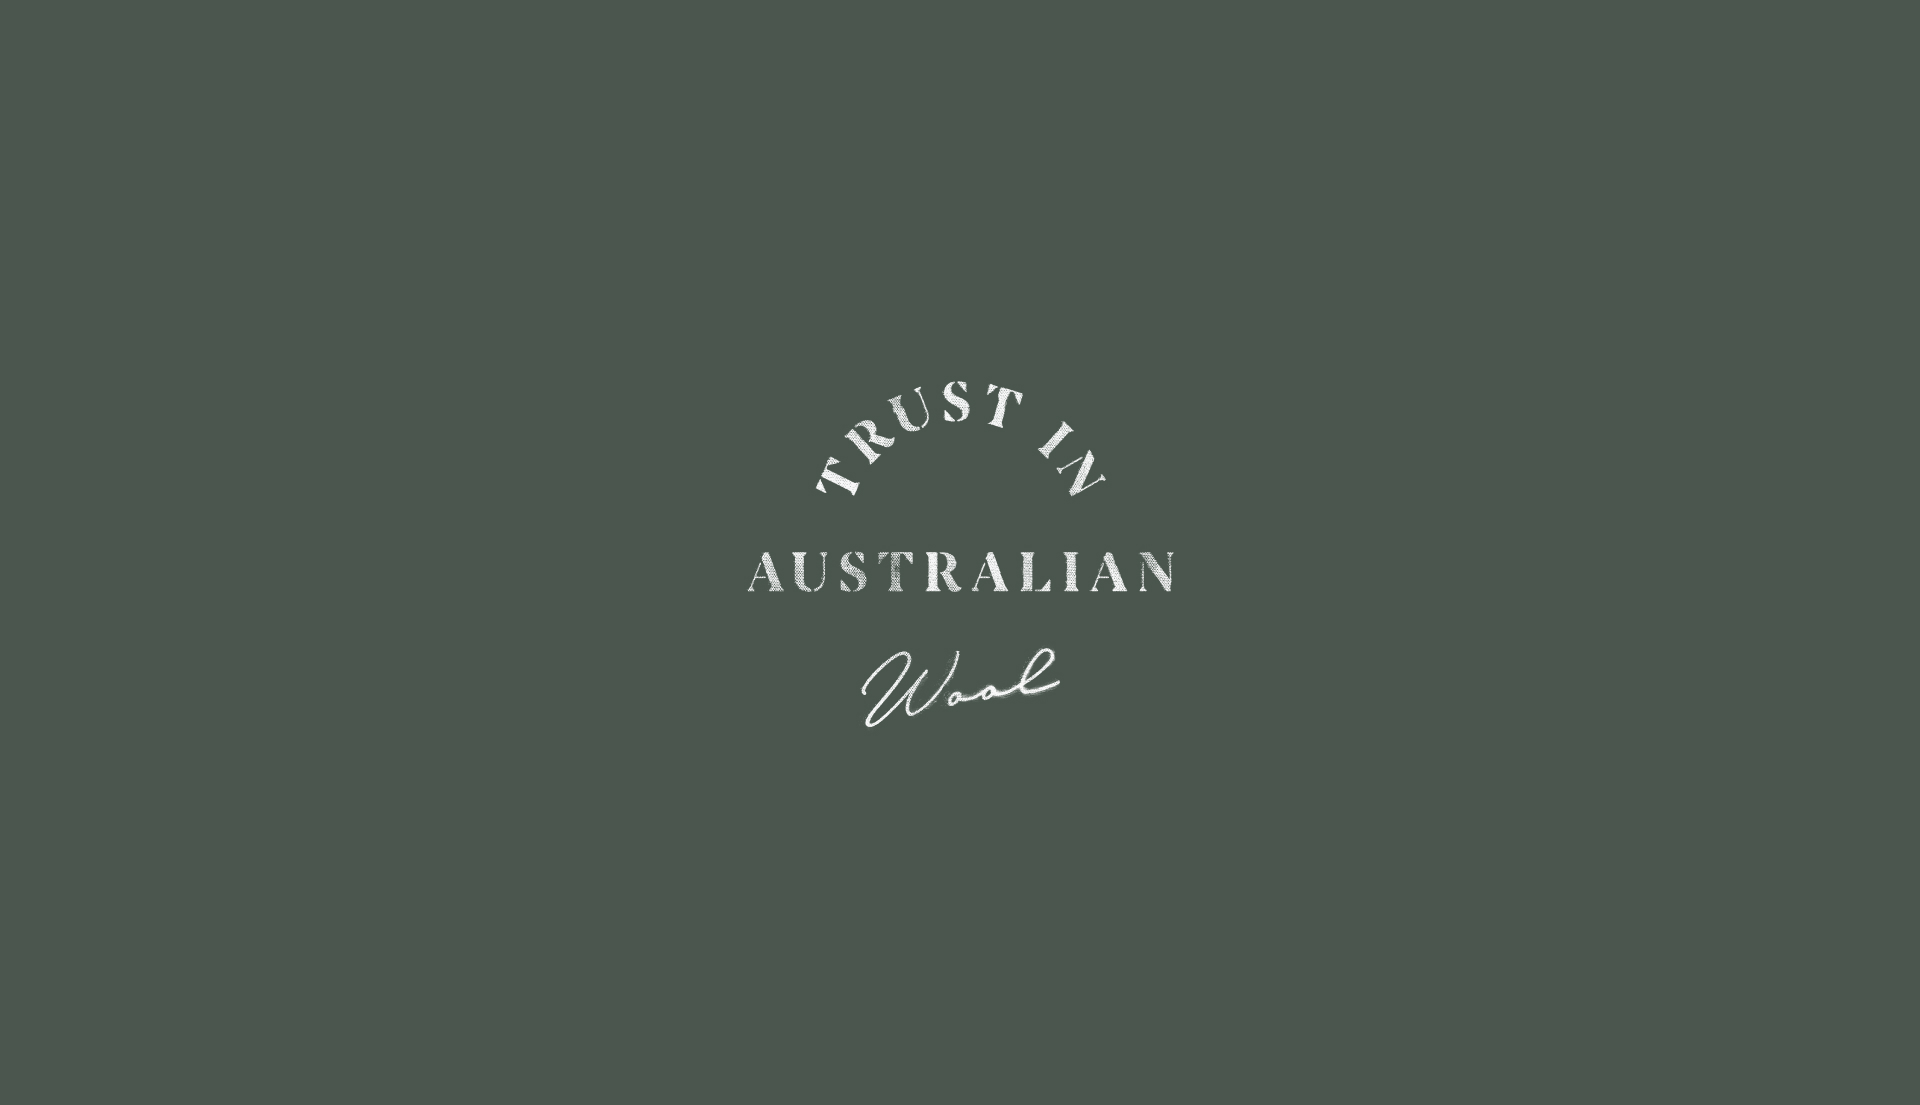 Trust in Australian Wool logo/mark.